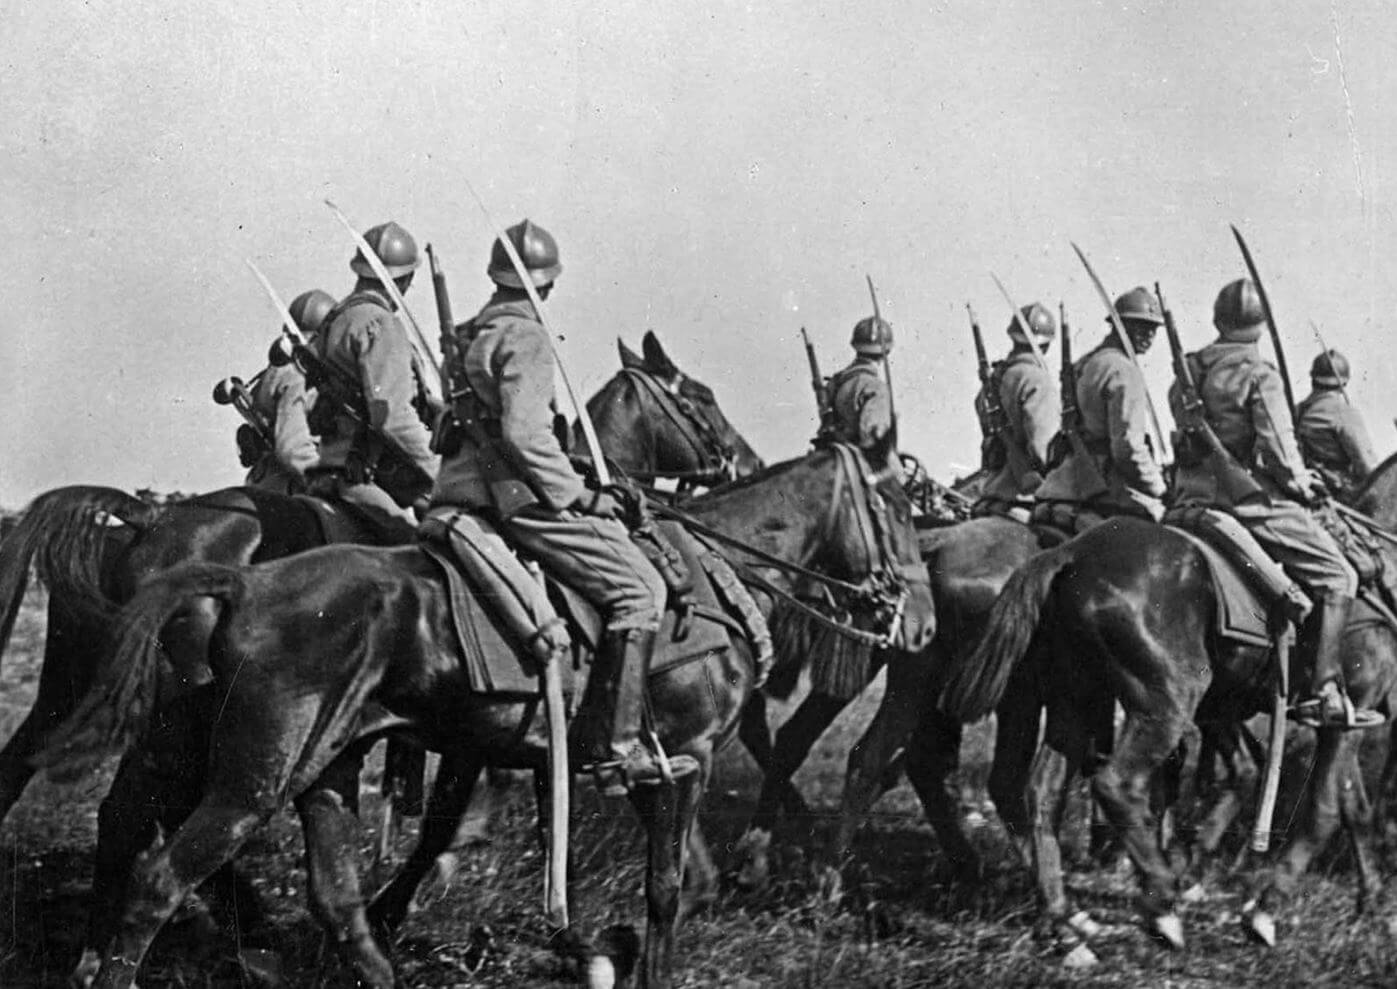 Le corps SORDET, ou la fin de l’âge d’or de la cavalerie à cheval ?